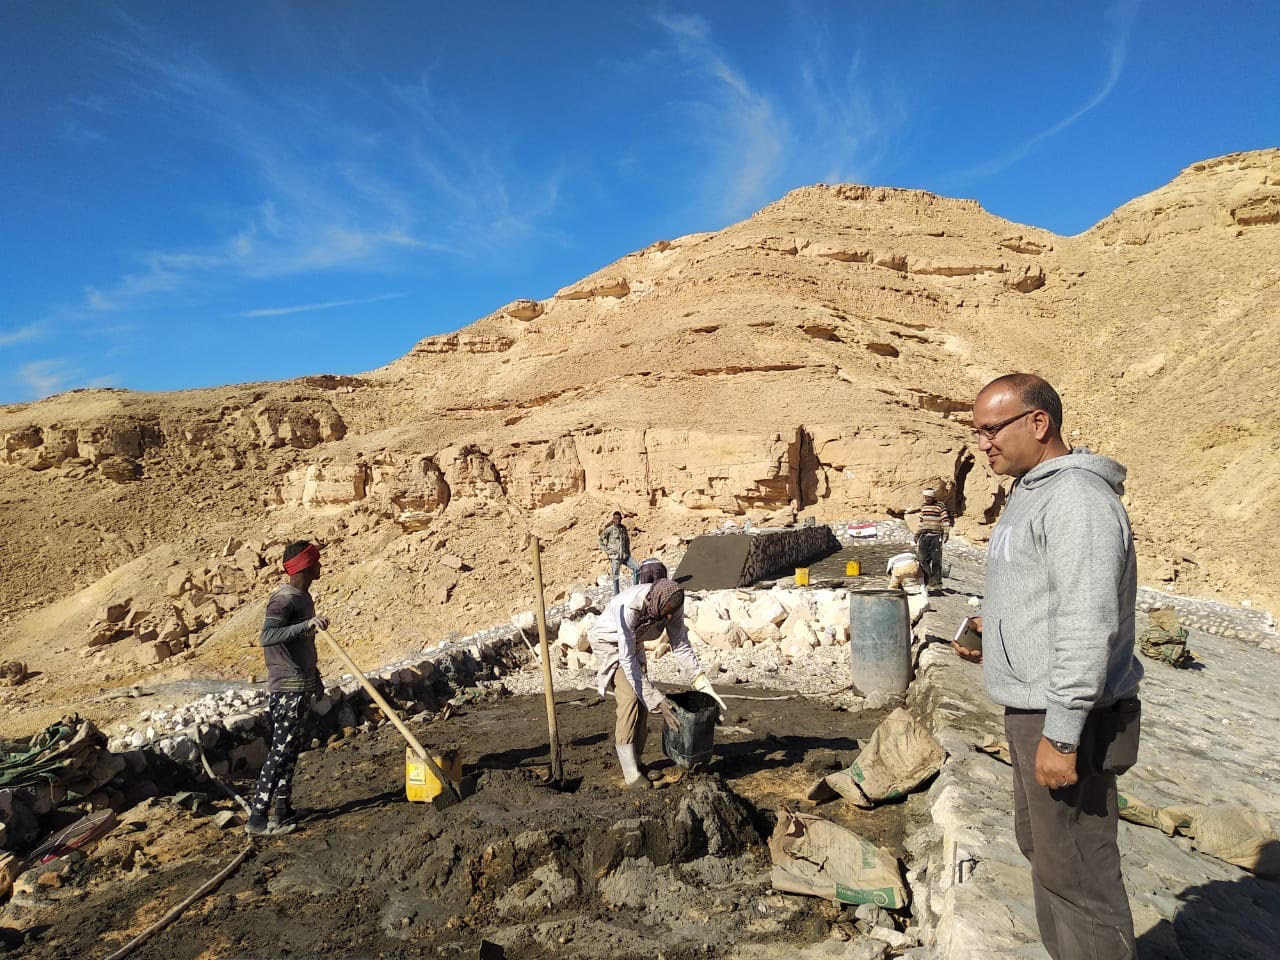  19 عمل للحماية من السيول فى وادى وتير أخطر الأودية النشطة فى جنوب سيناء (2)